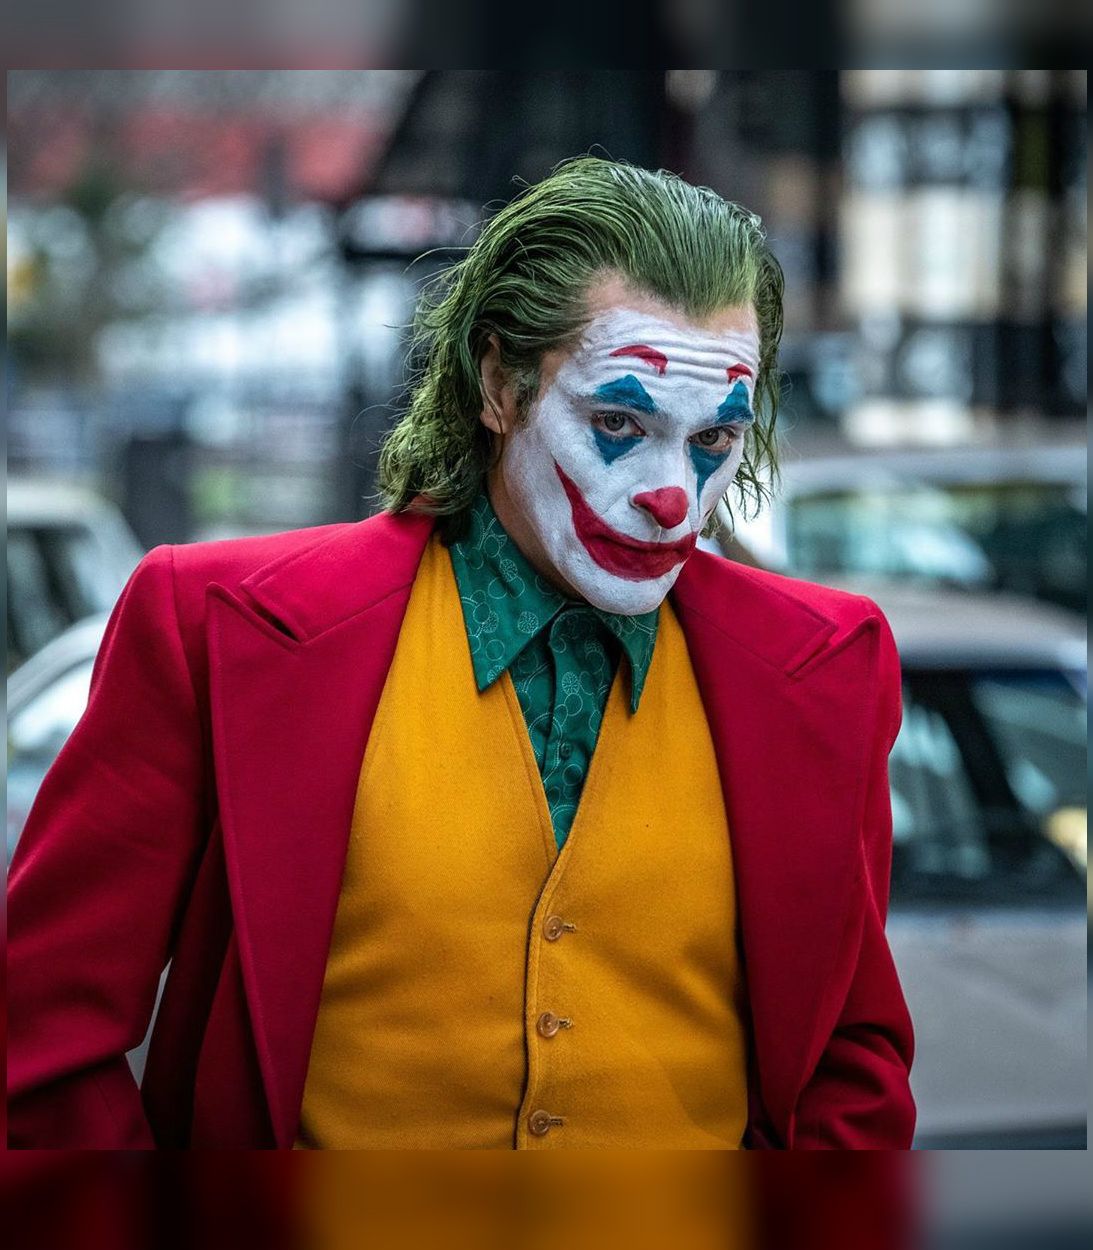 Todd Phillips posts behind-the-scenes Joker pictures to his Instagram